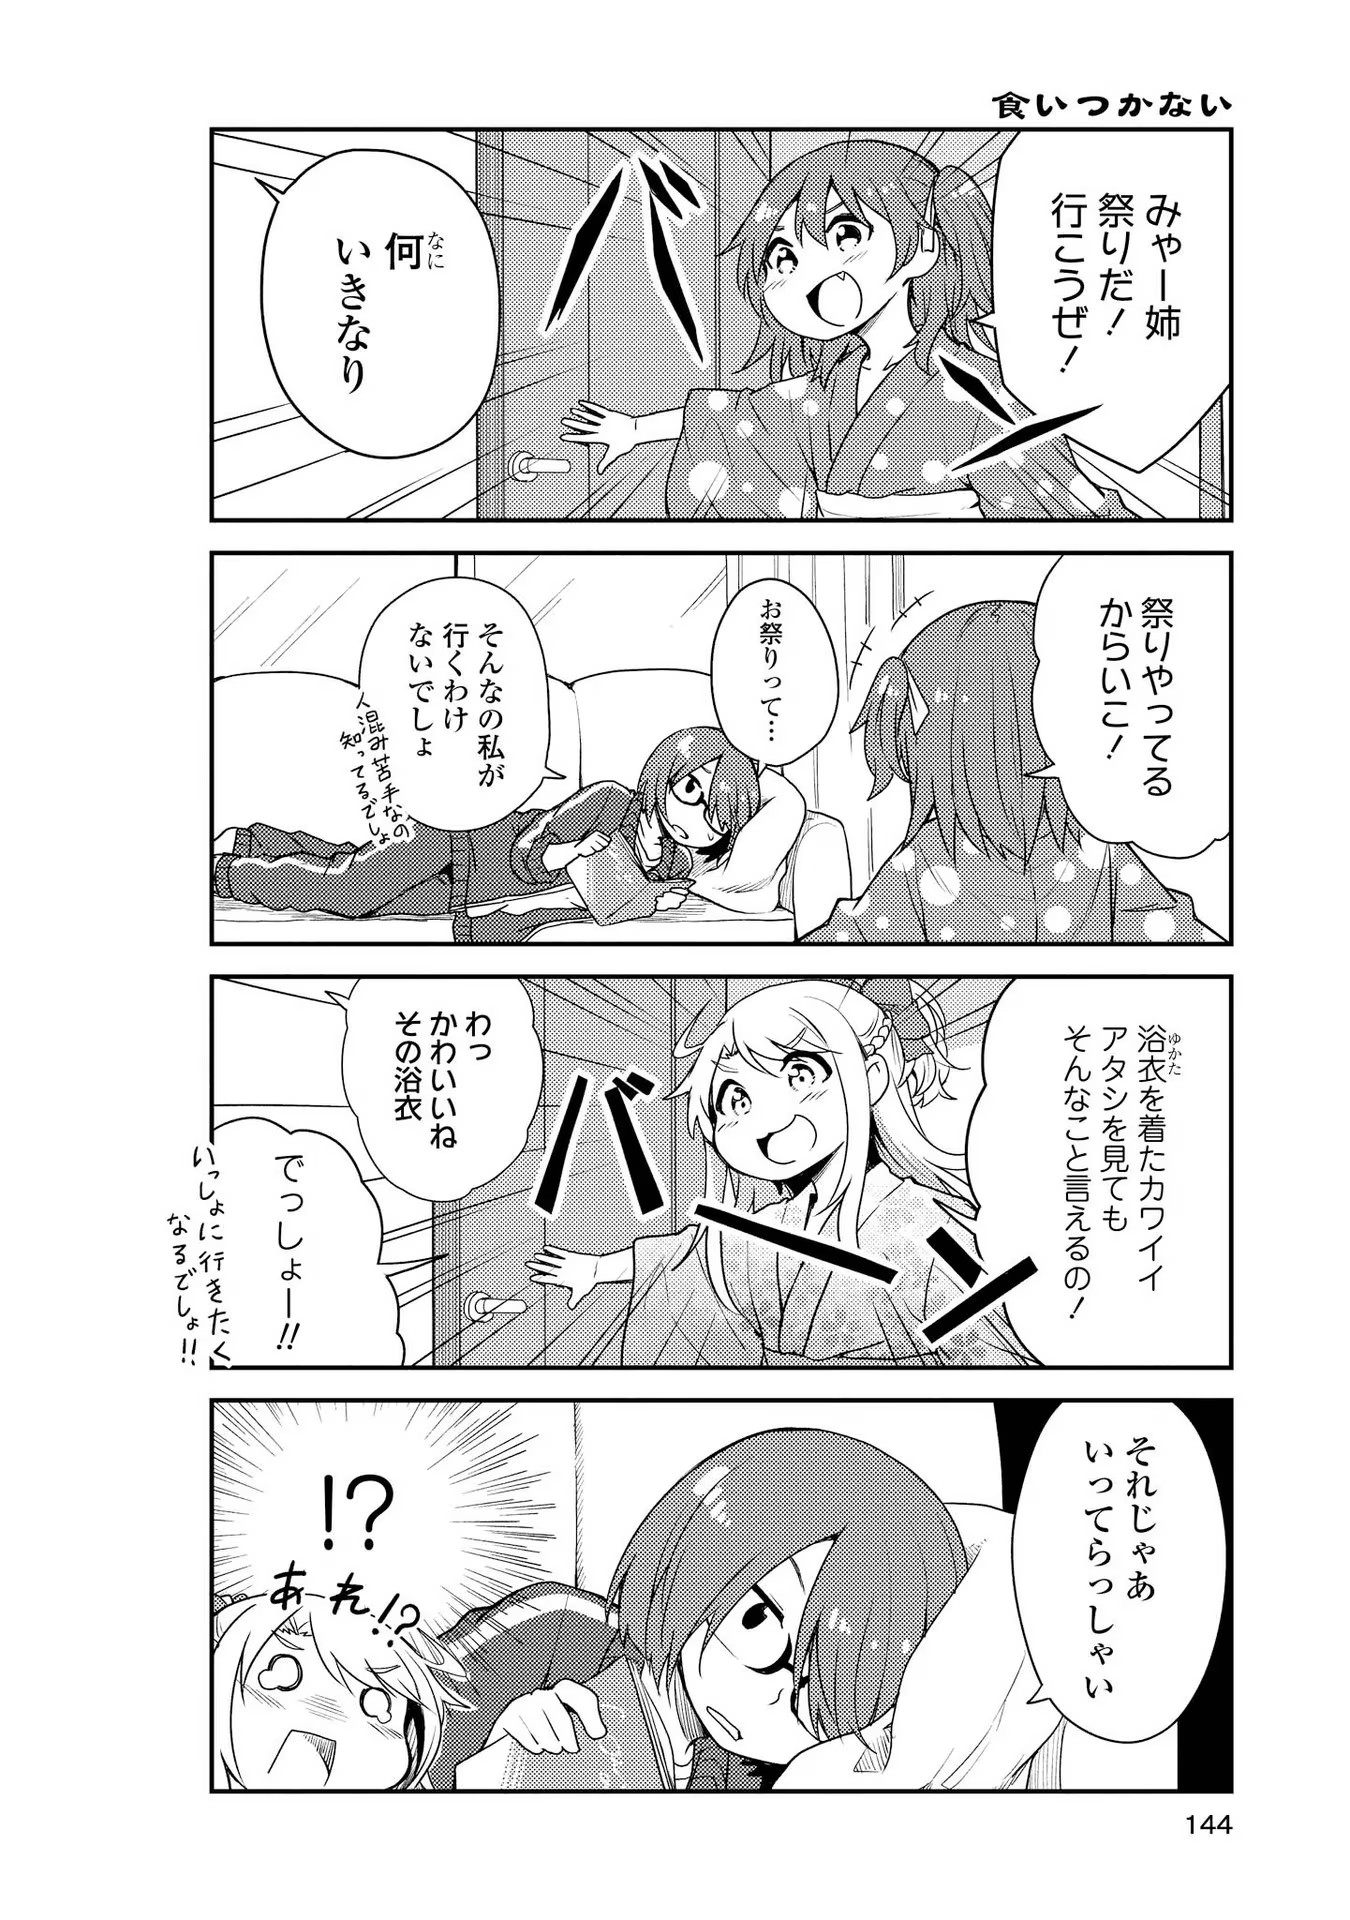 Watashi ni Tenshi ga Maiorita! - Chapter 10 - Page 2